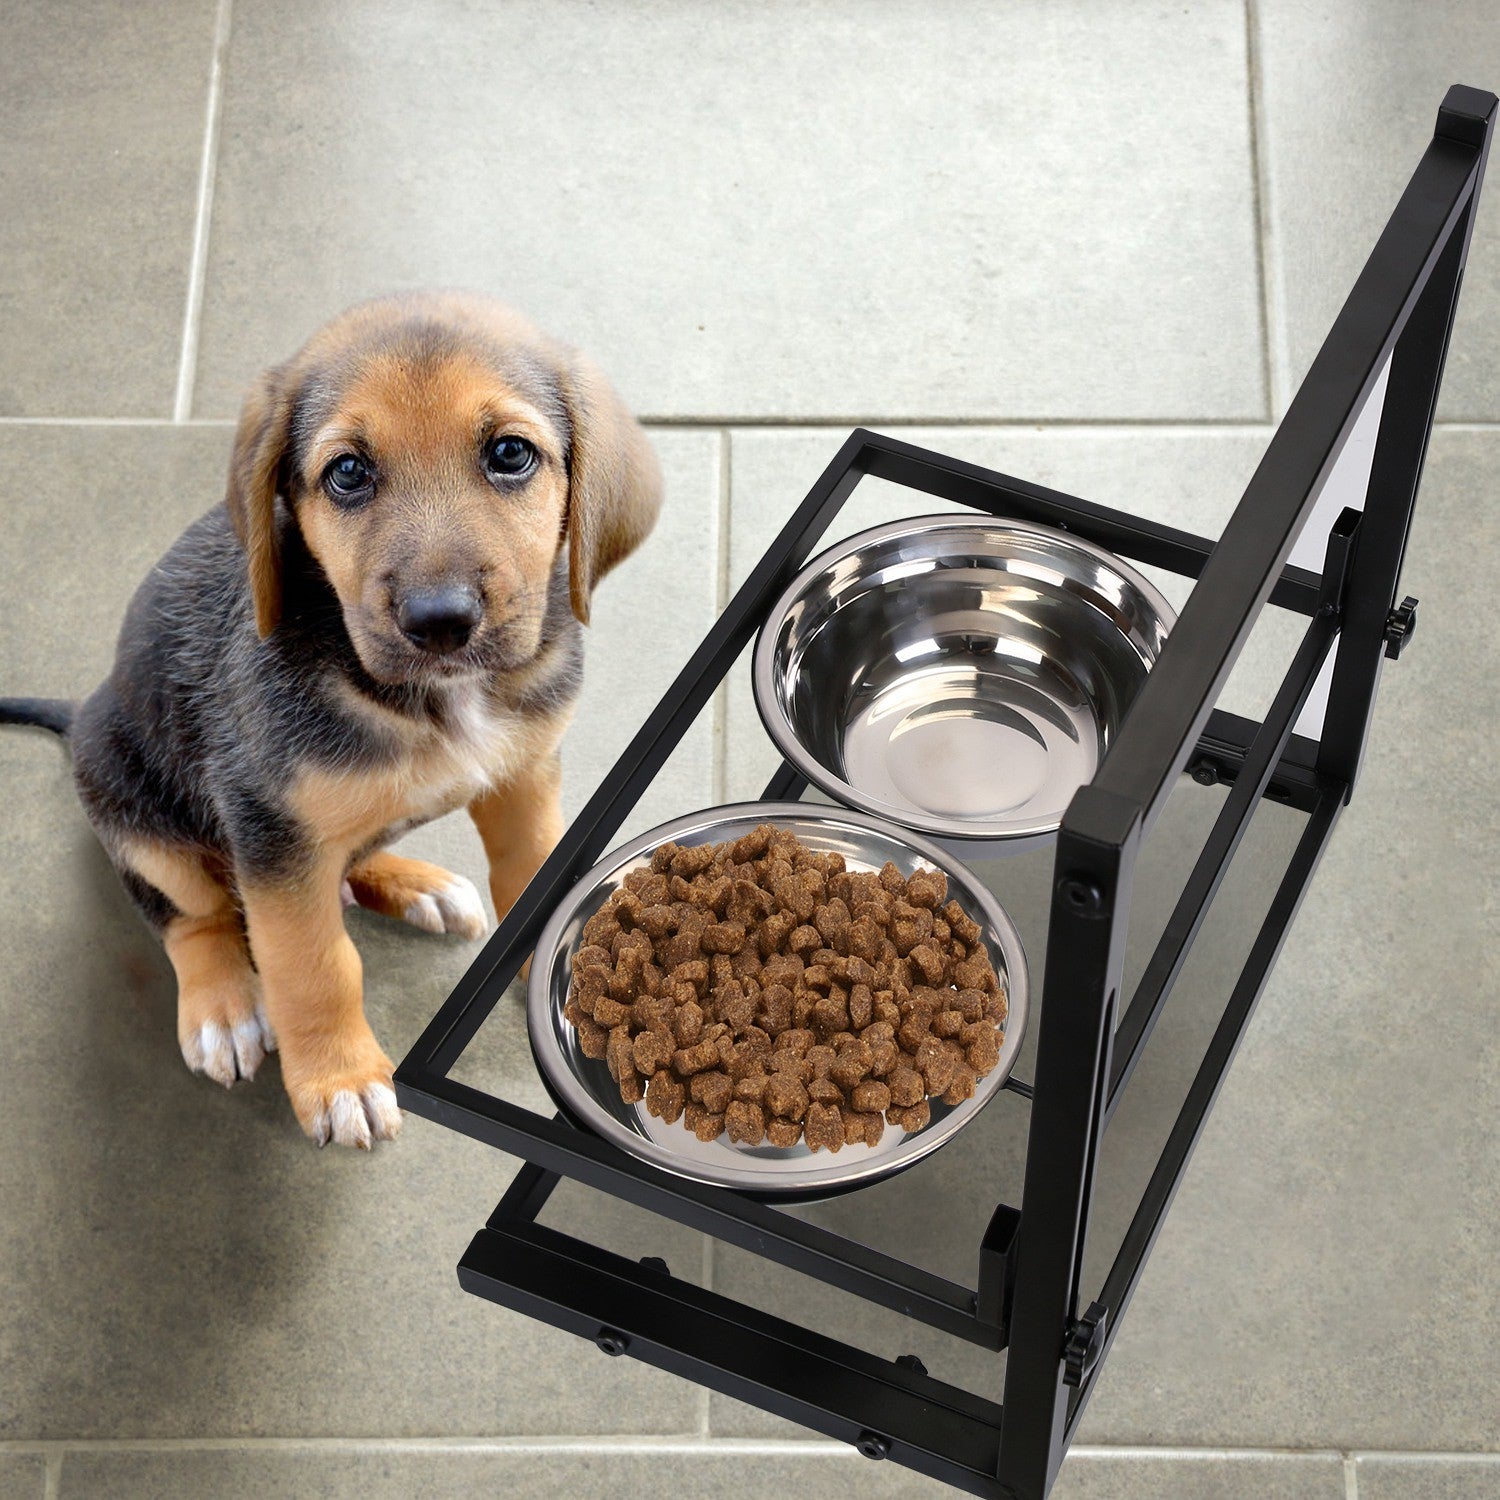 Adjustable Stainless Steel Dog Raised Bowls